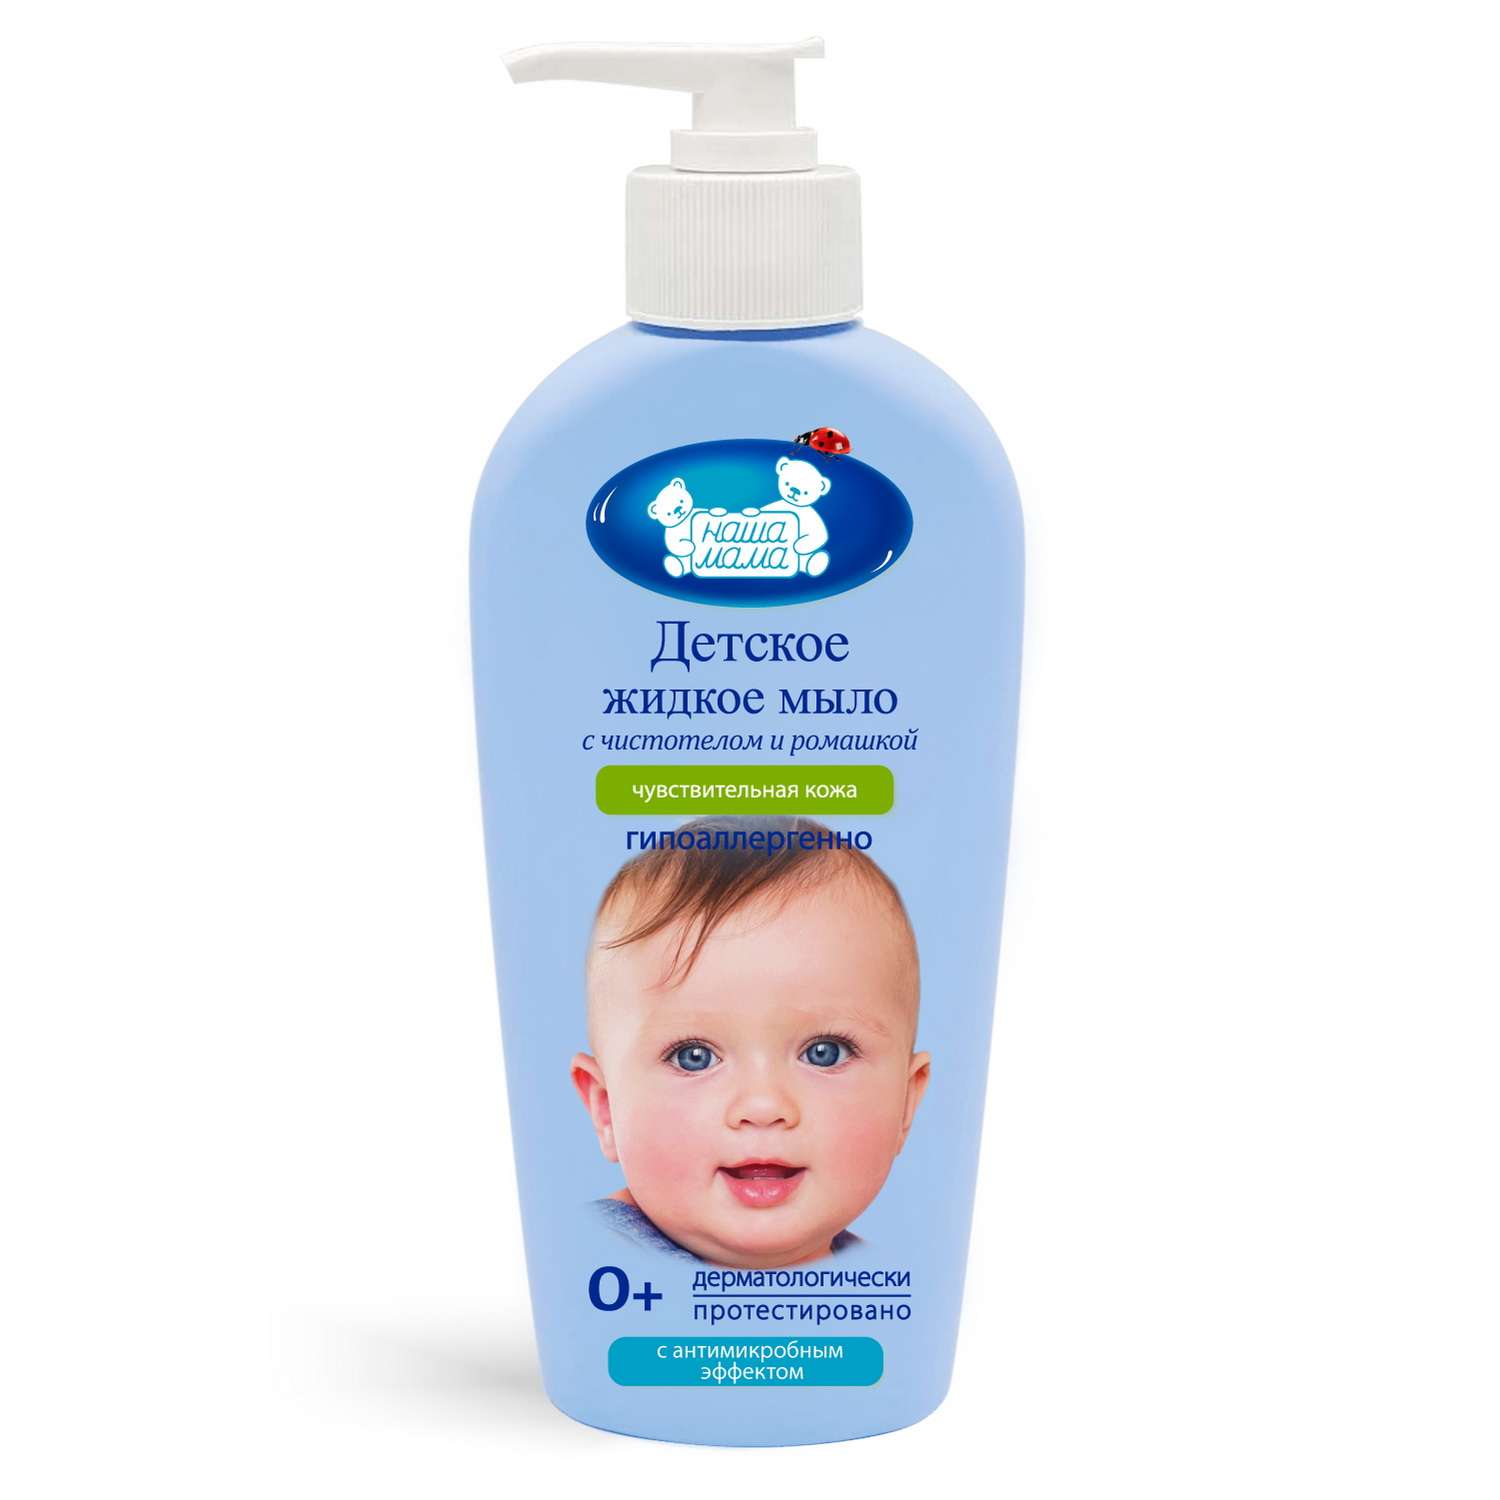 Почему малышу нужно специальное мыло?